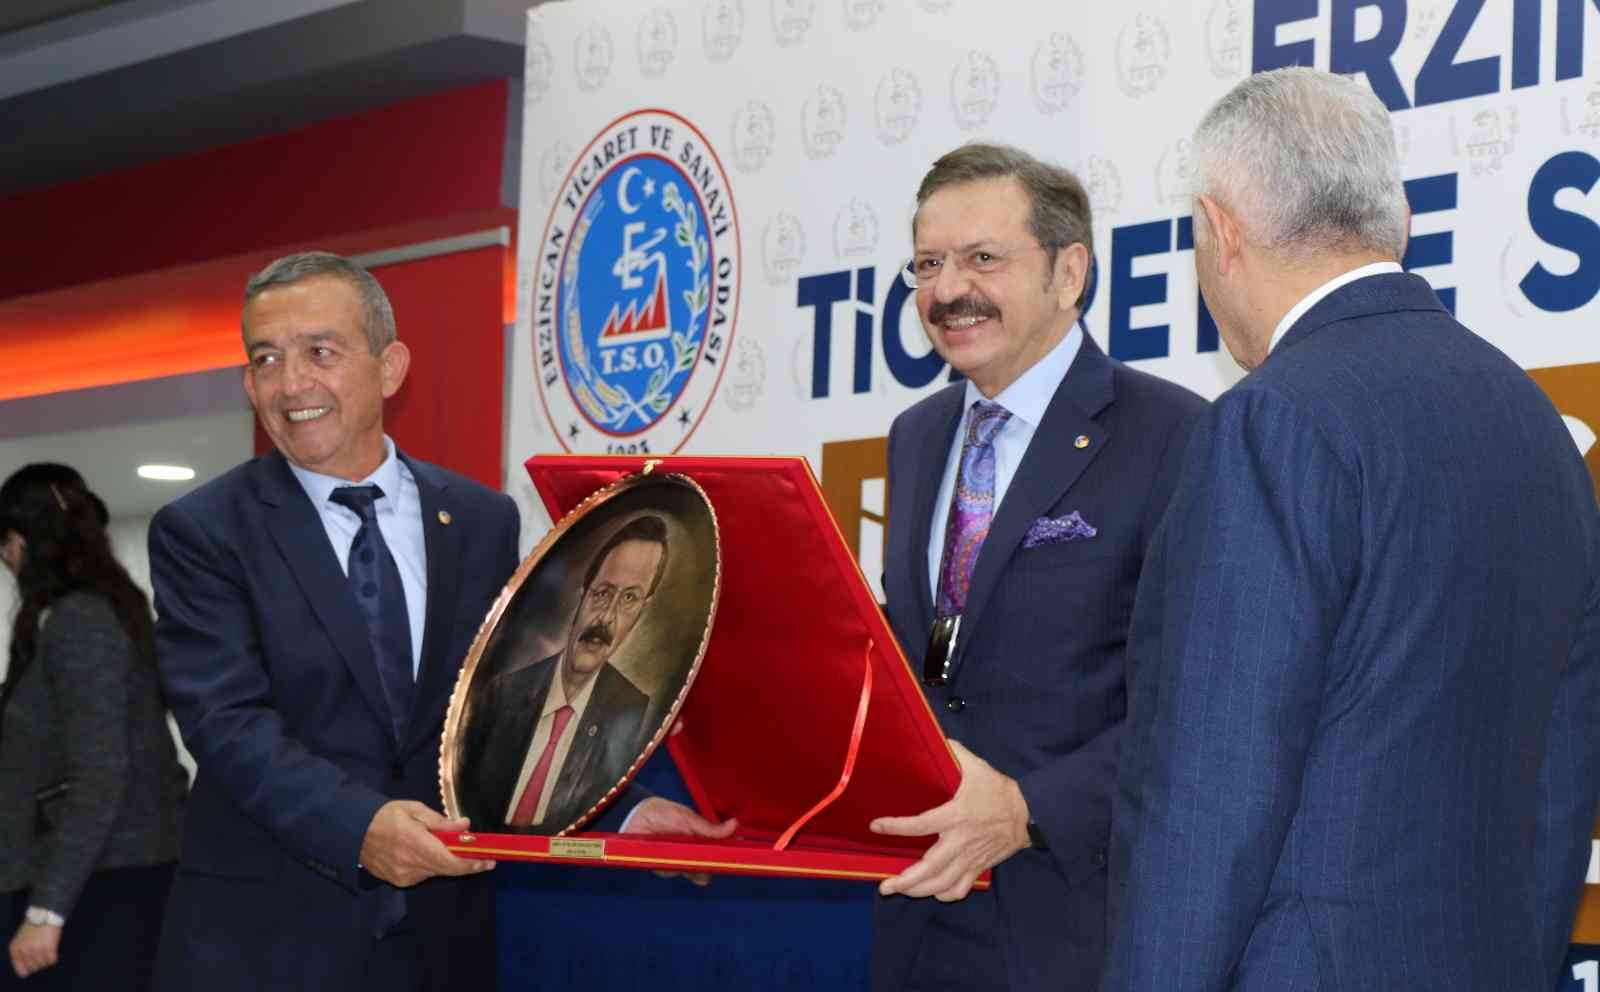 TOBB Başkanı Hisarcıklıoğlu: “Sanayide çalıştıracak eleman bulamıyoruz” #erzincan